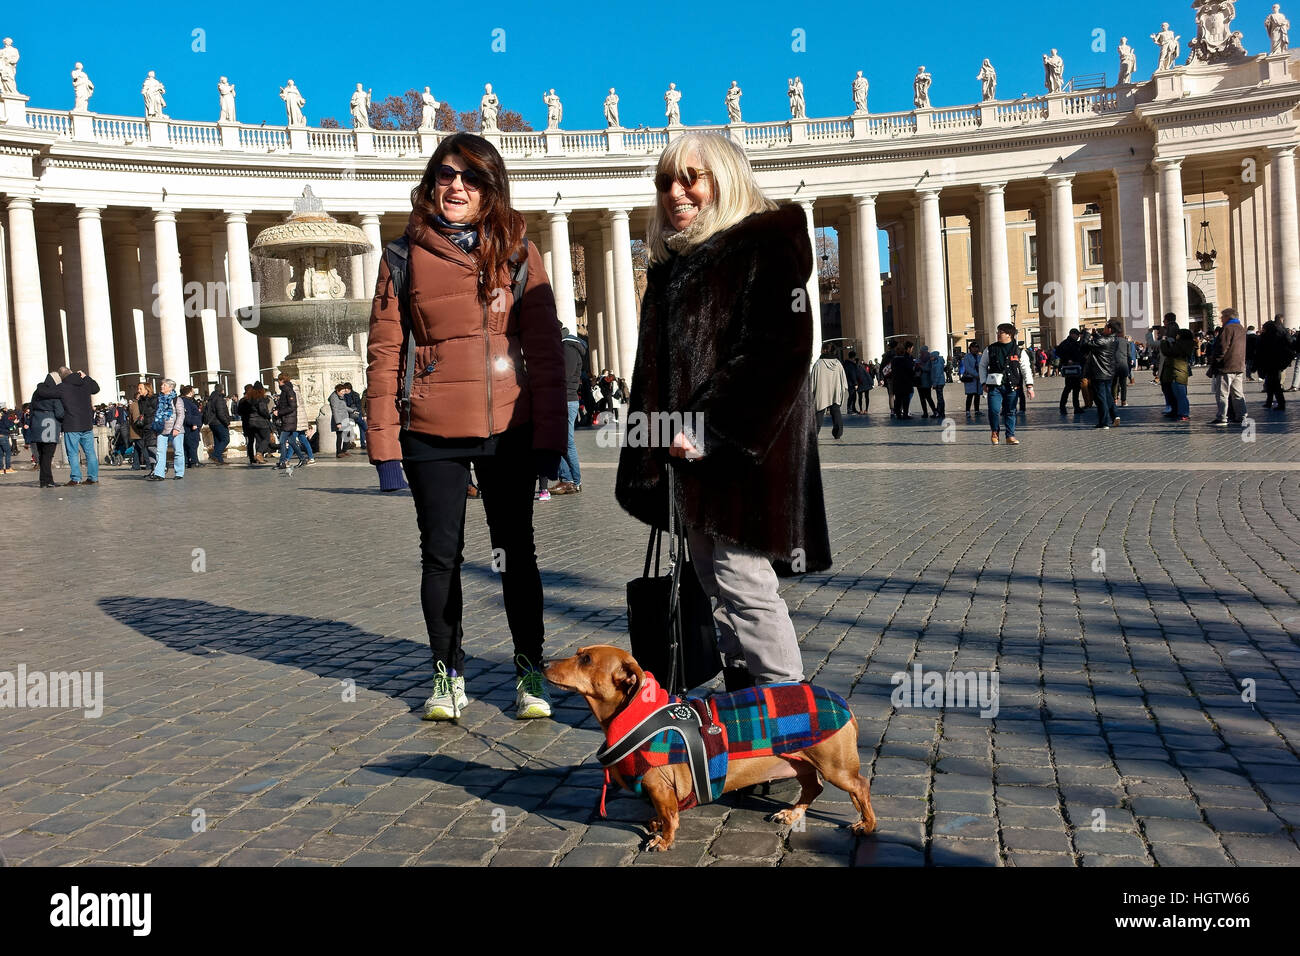 Mère et fille debout sur la place Saint-Pierre tout en marchant leur chien de dachshund lors d'une journée ensoleillée d'hiver, ciel bleu. Vatican, Rome, Italie, Europe. Banque D'Images